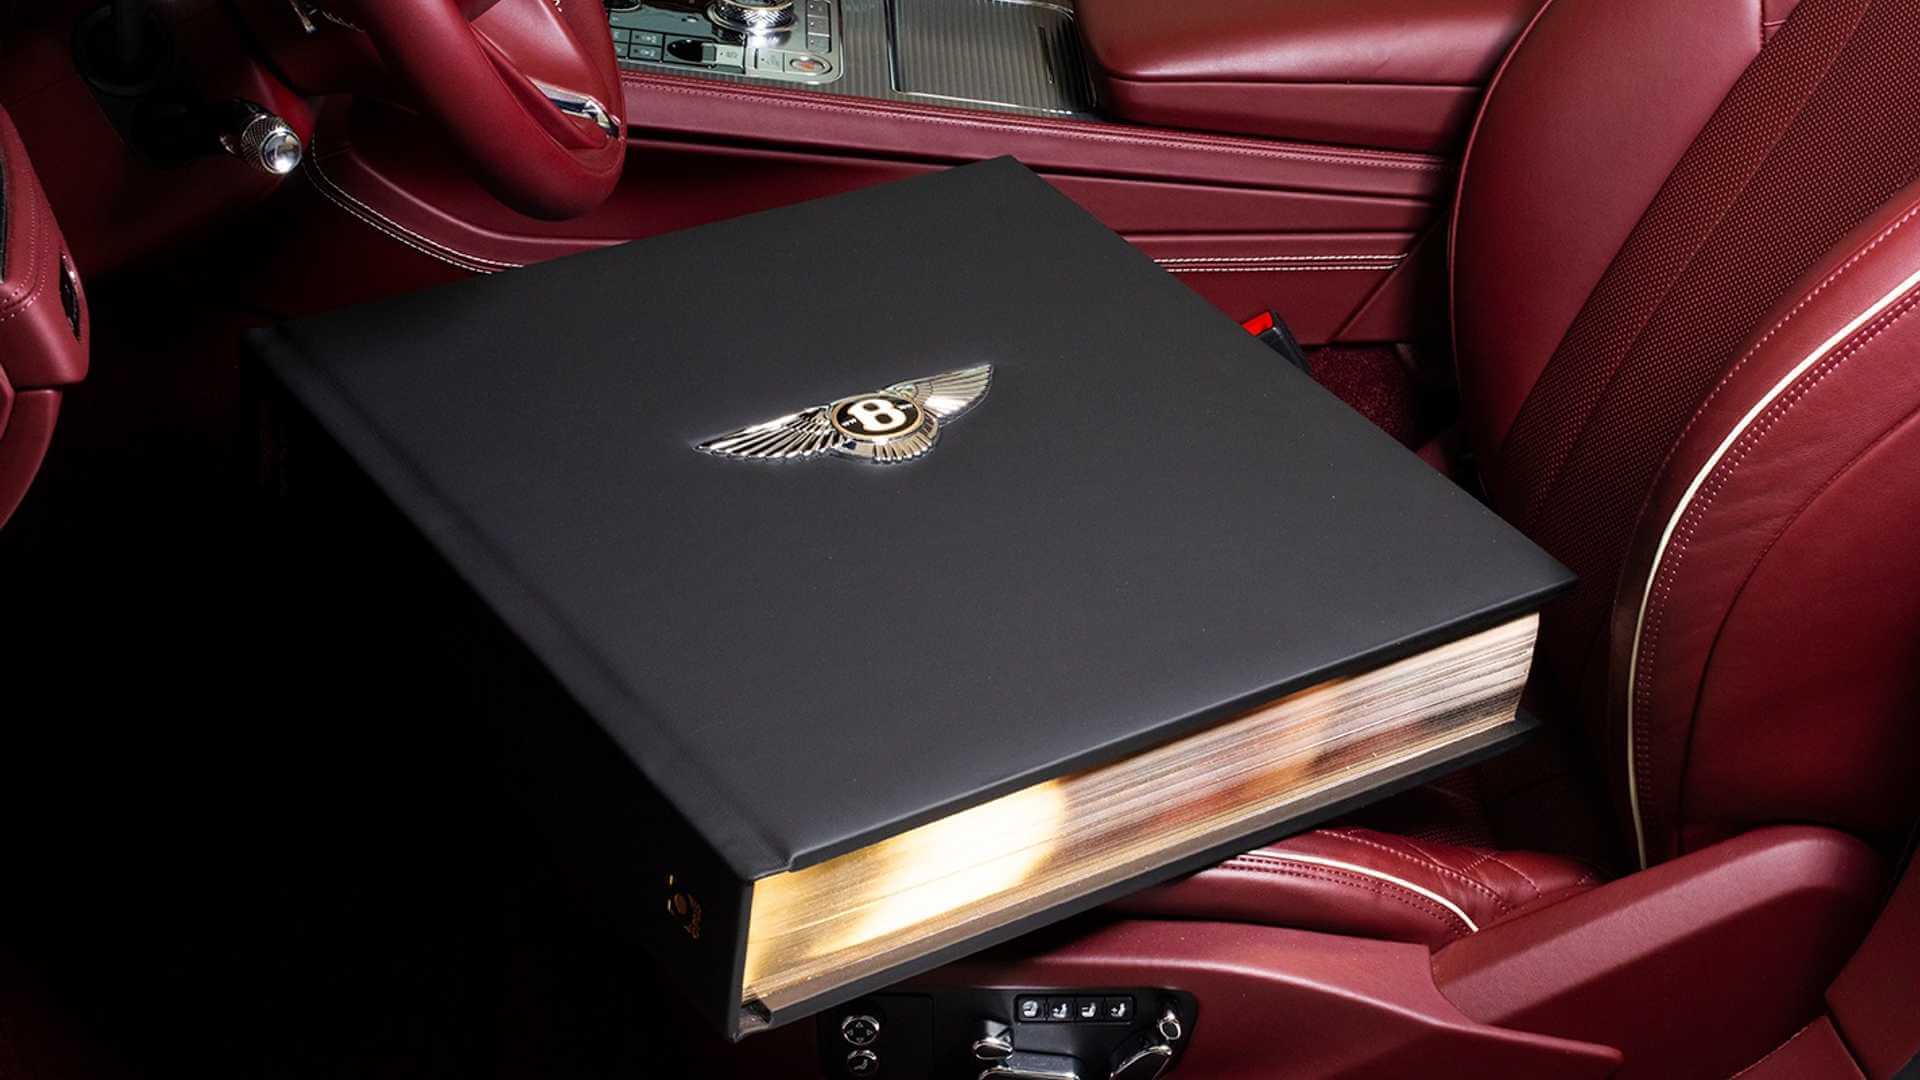 Εσείς πόσα θα πληρώνατε για ένα βιβλίο με την ιστορία της Bentley;